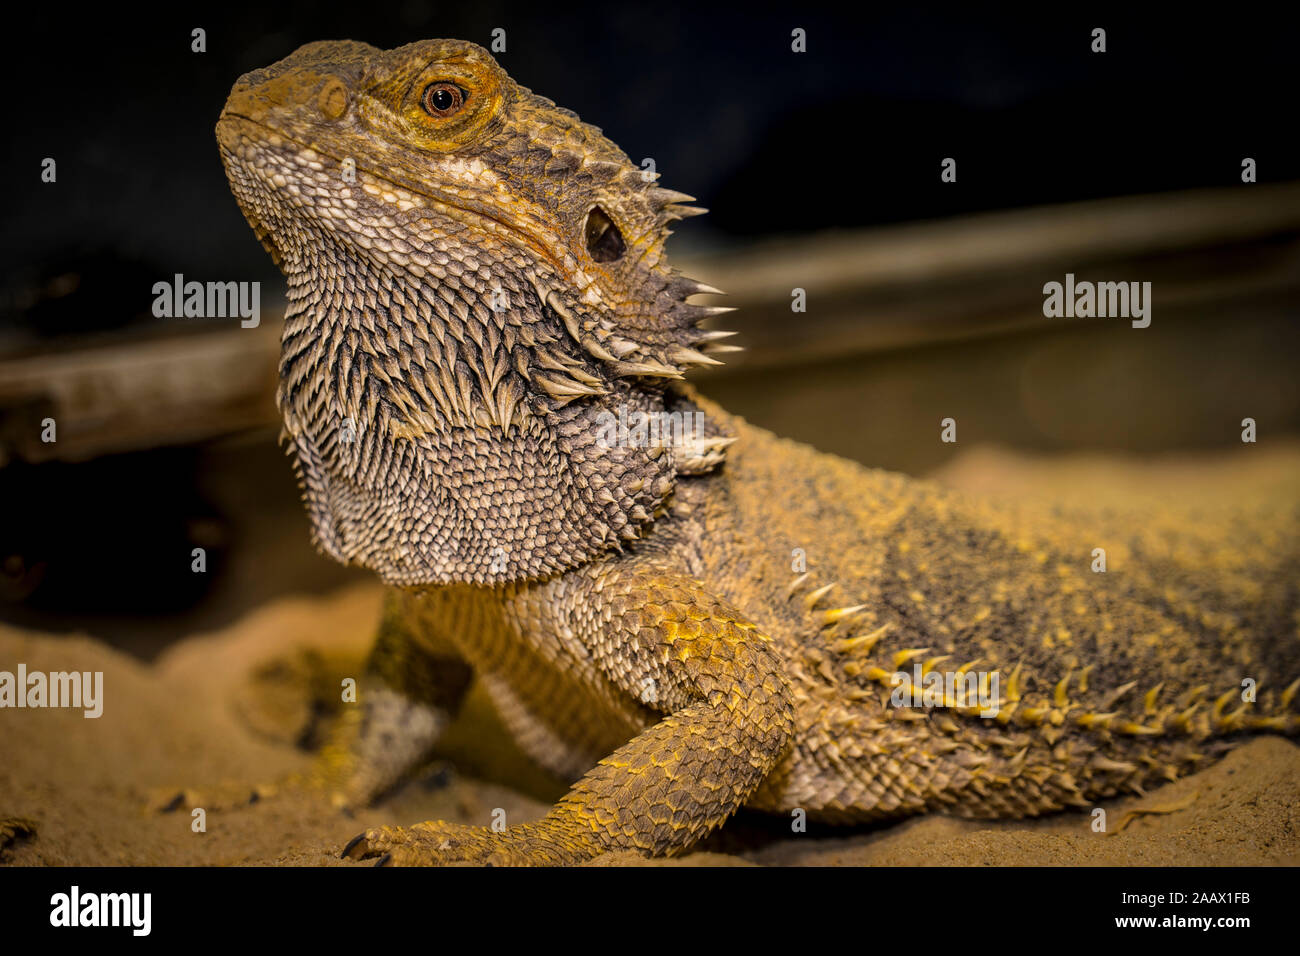 Close up of a large green iguana Latin name Iguana iguana the south Florida keys Key West . Stock Photo